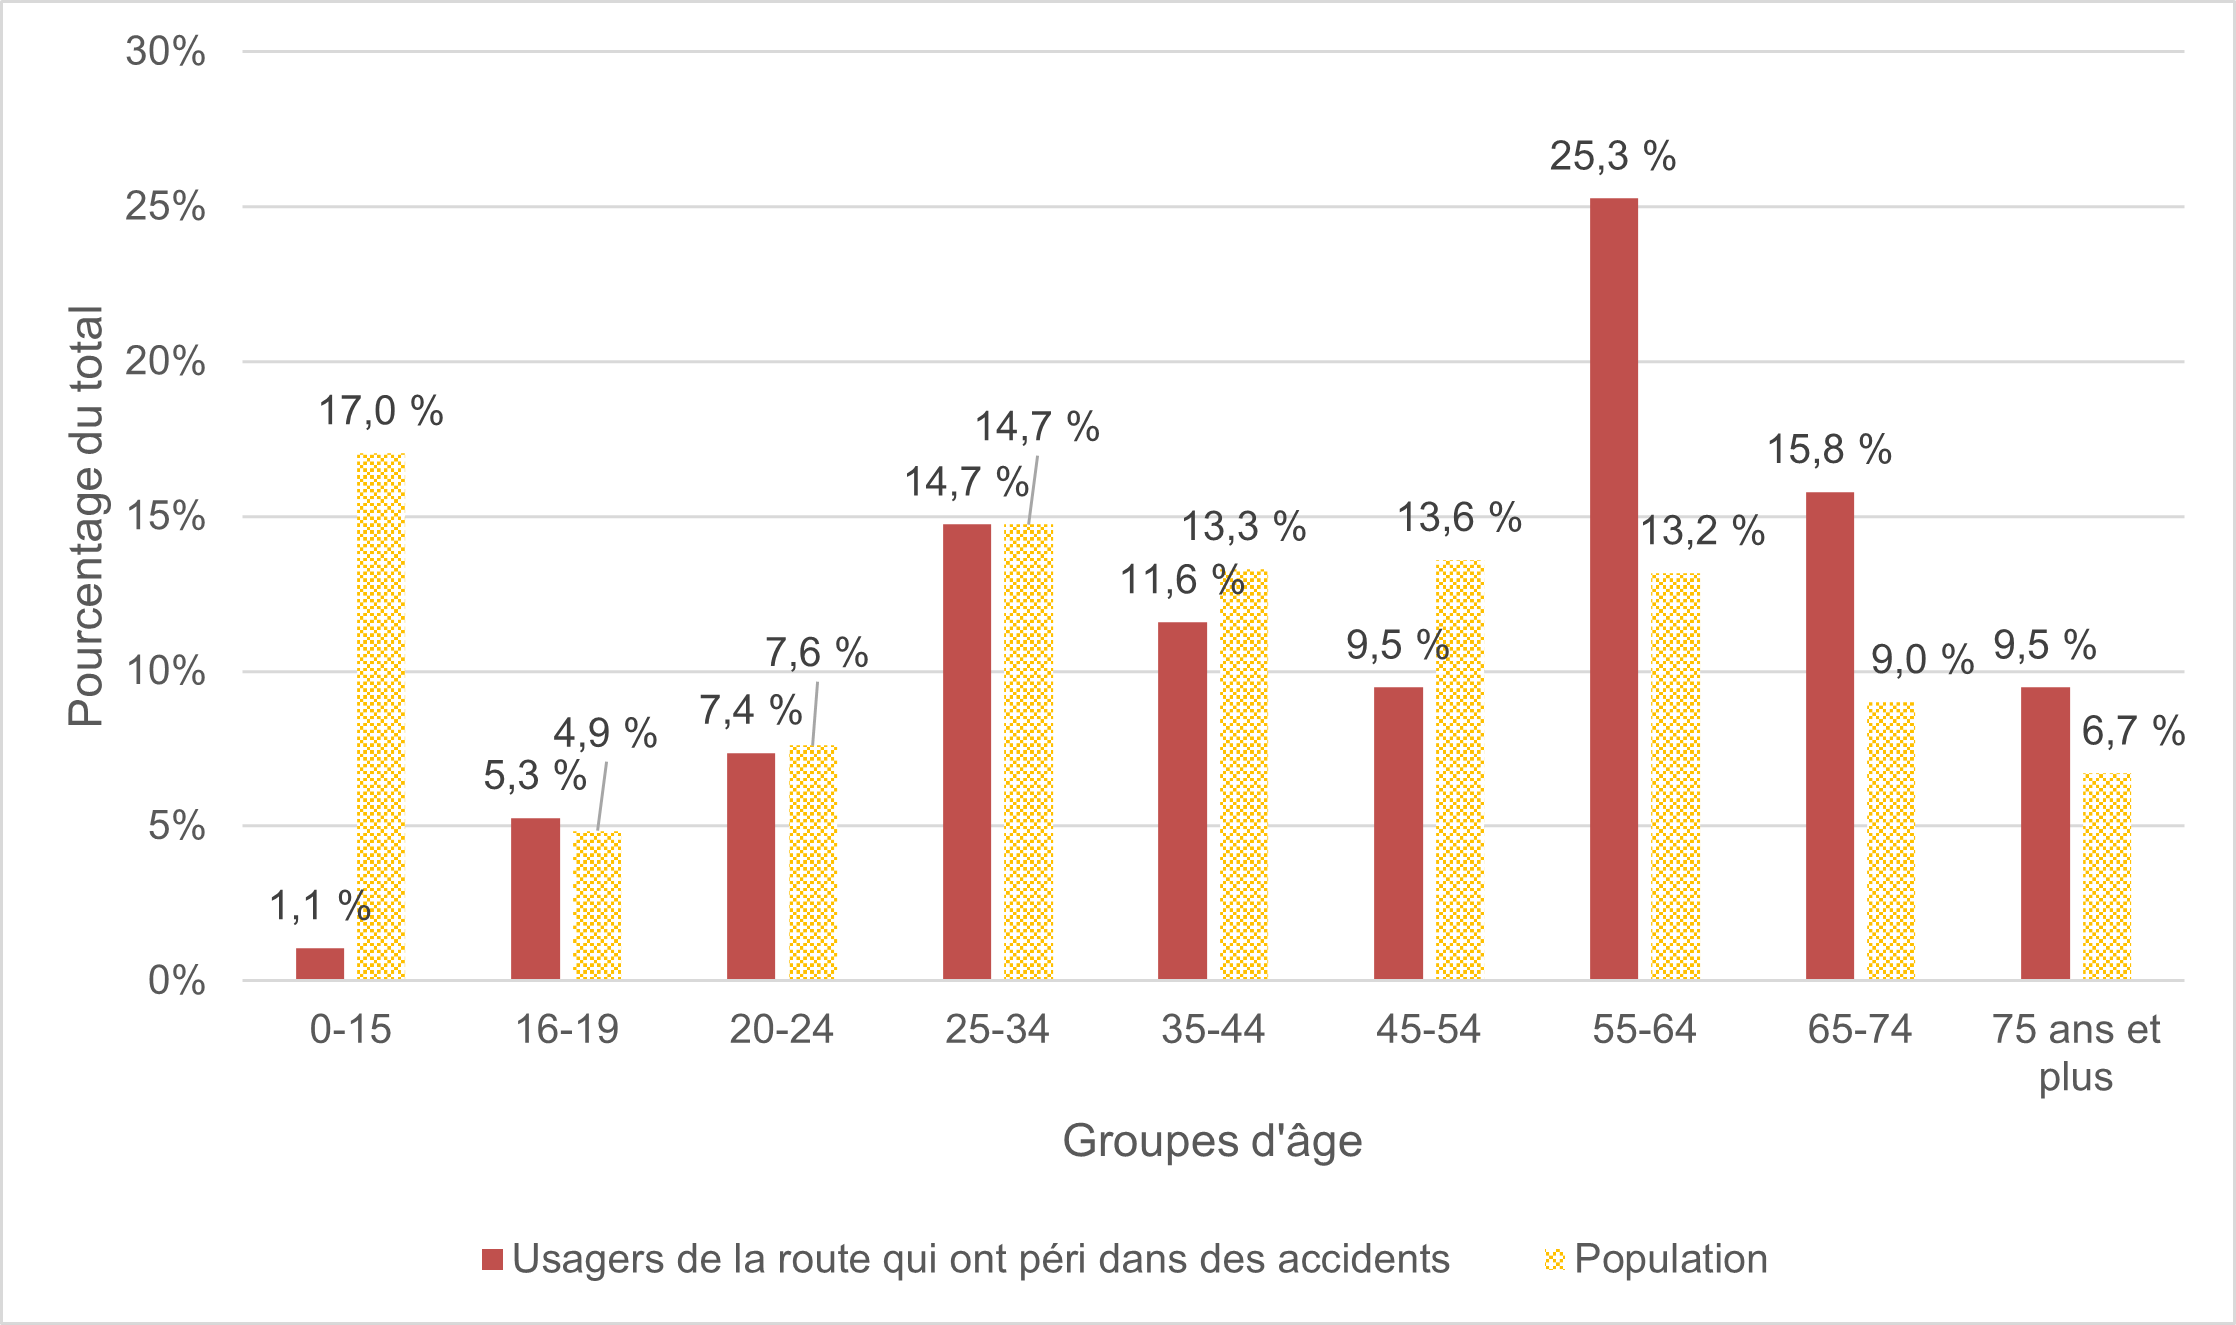 Figure 10 compare le nombre d’usagers de la route qui ont péri dans des collisions par groupes d’âge à la répartition de la population d’Ottawa par groupe d’âge. 